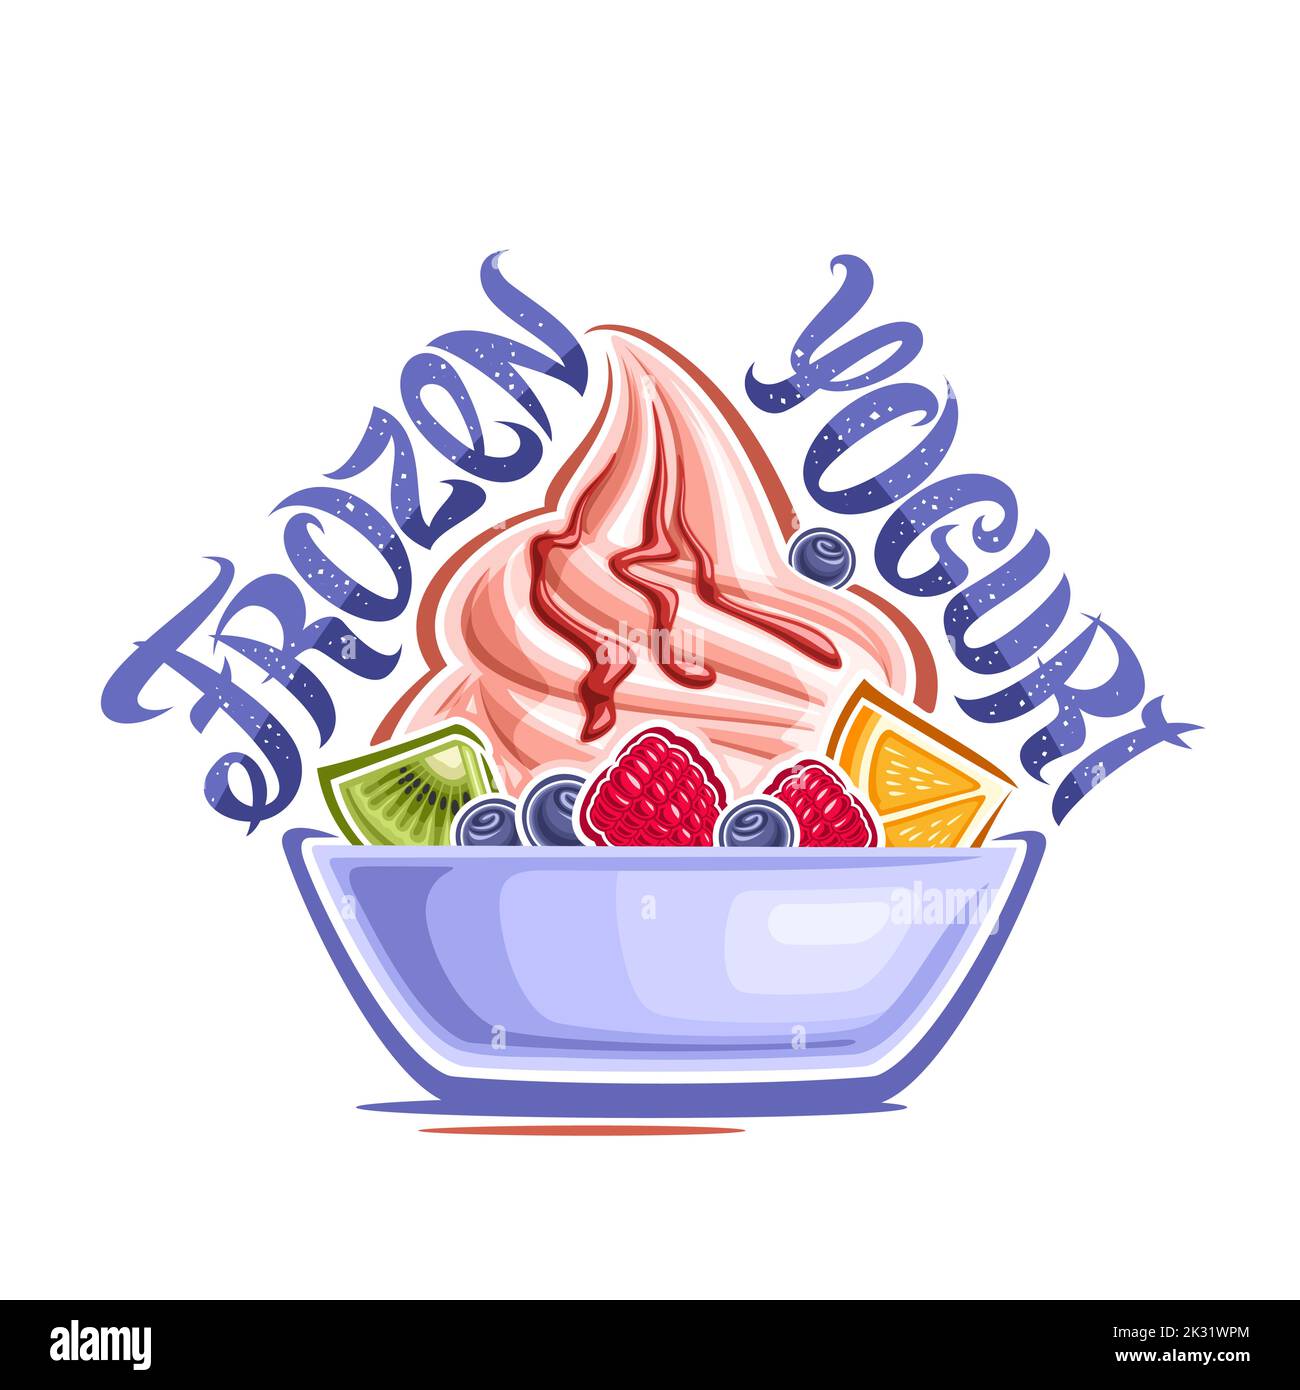 Logo Vector pour yaourt glacé, étiquette décorative avec illustration de la crème glacée à la fraise en spirale avec fruits frais dans un plat bleu, lettrage unique pour Illustration de Vecteur